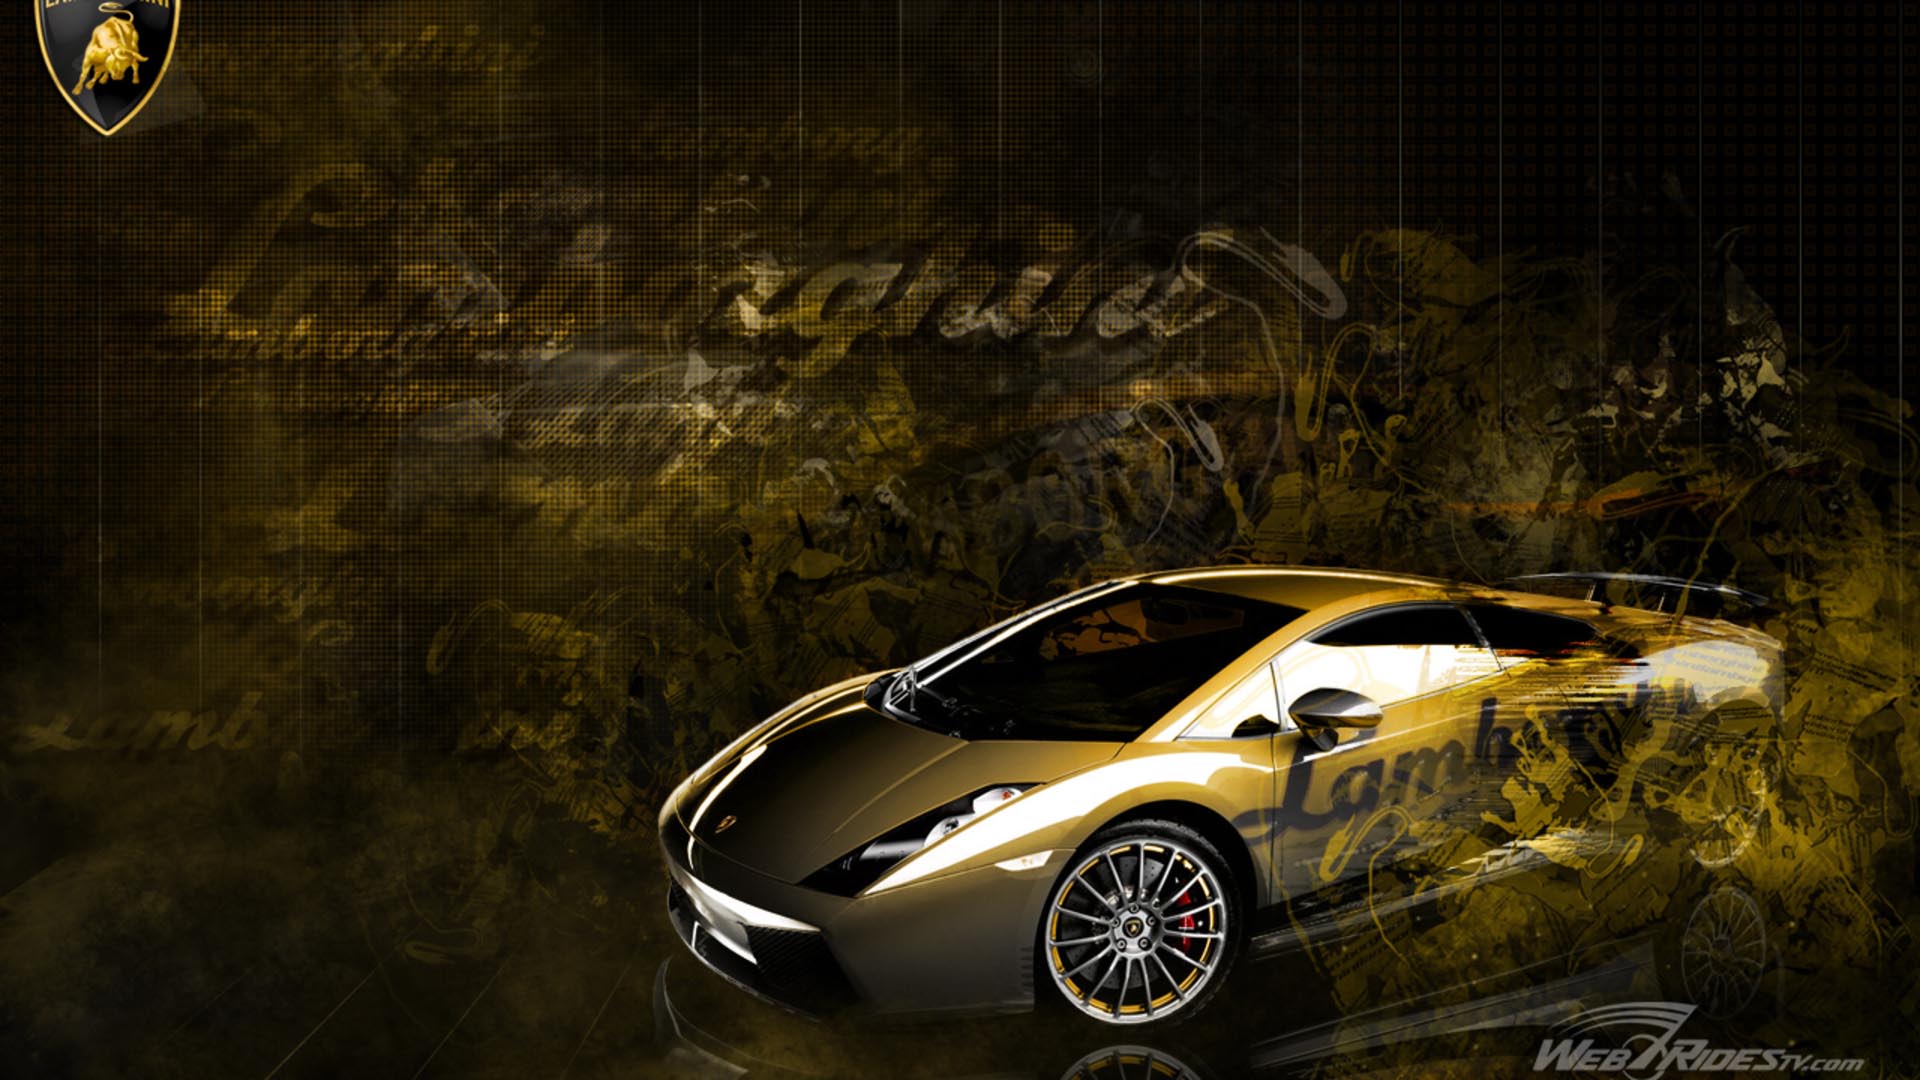 Top 10 Lamborghini Wallpapers - Original Preview - walmage.com